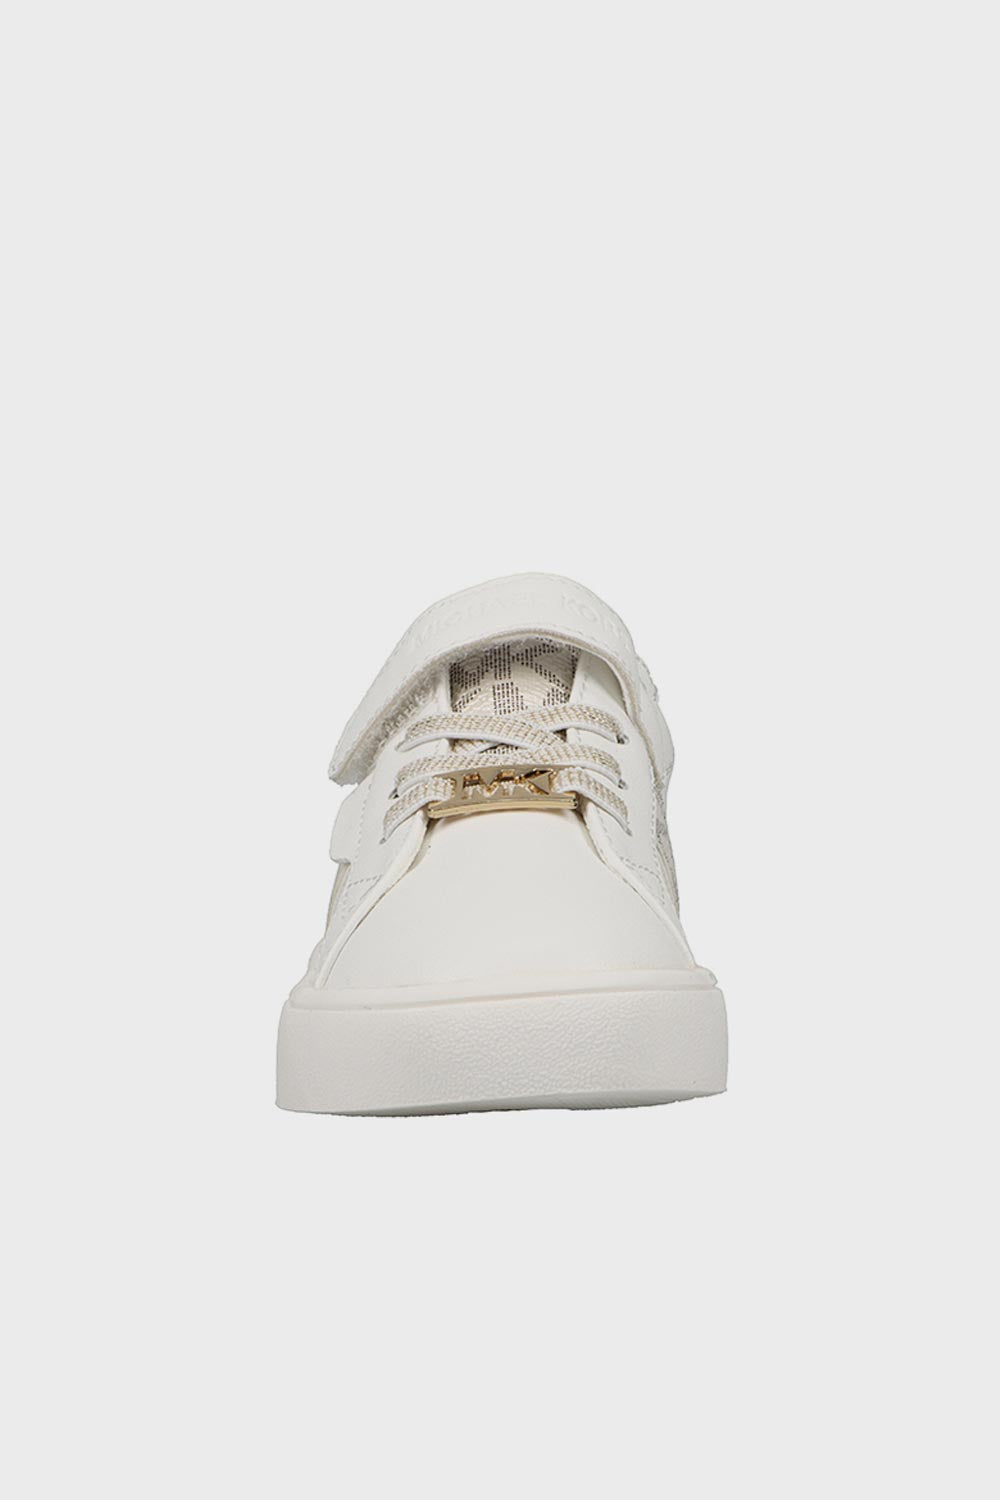 מייקל קורס נעלי סניקרס Jem Maxine בצבע לבן לתינוקות-Michael Kors-21-נאקו